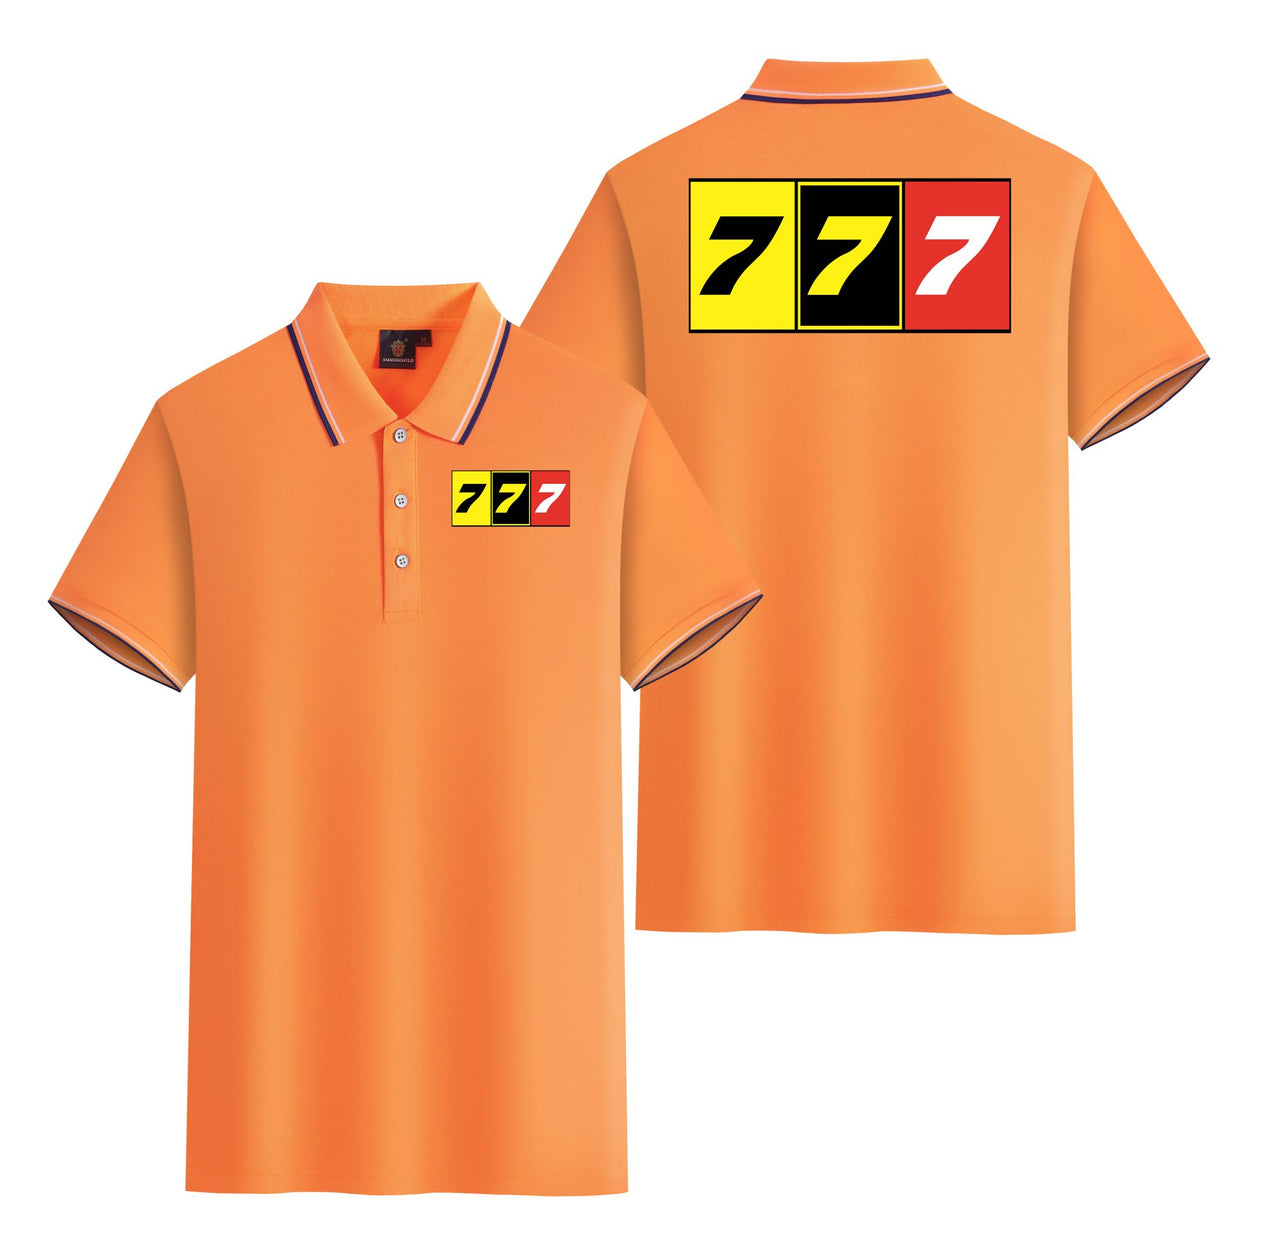 Flat Colourful 777 Designed Stylish Polo T-Shirts (Double-Side)